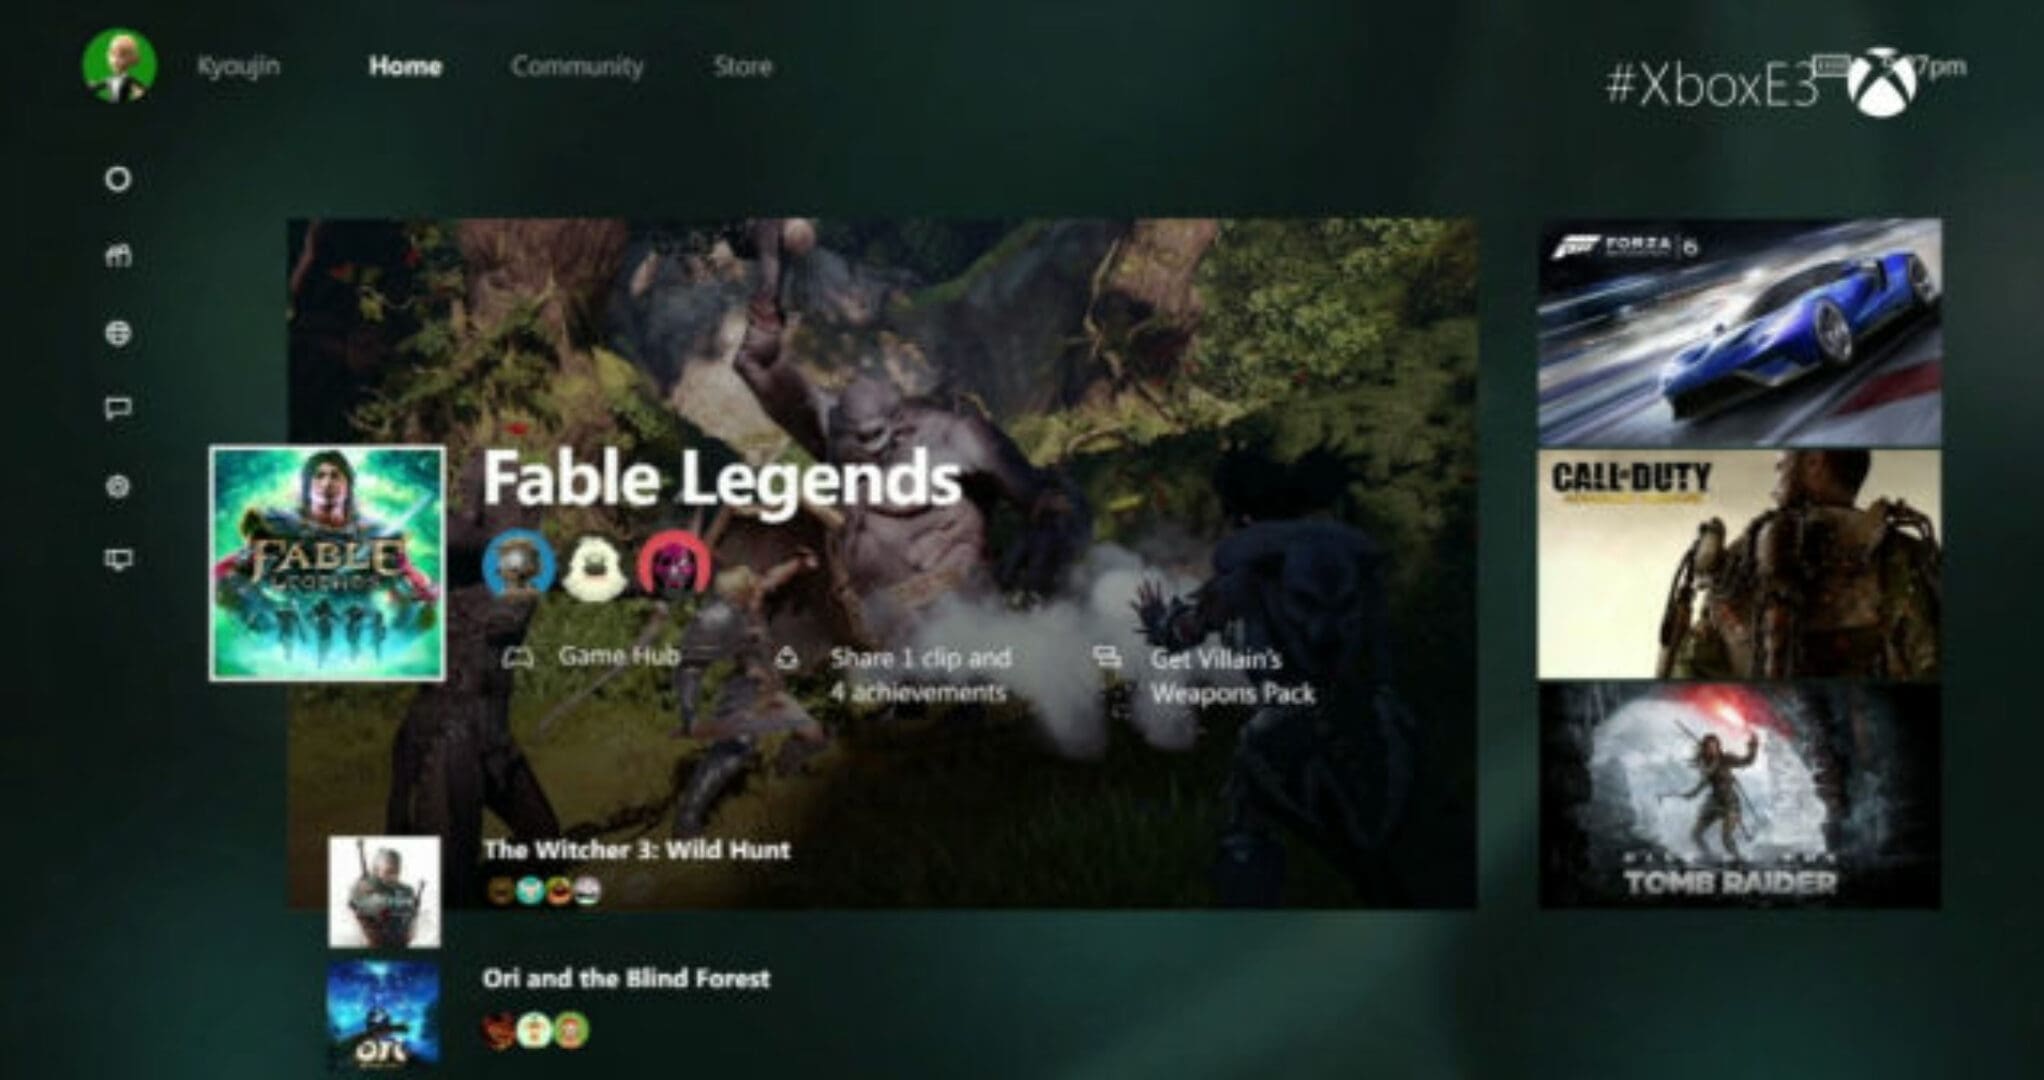 E3 2015: New Xbox Dashboard Coming in the Future